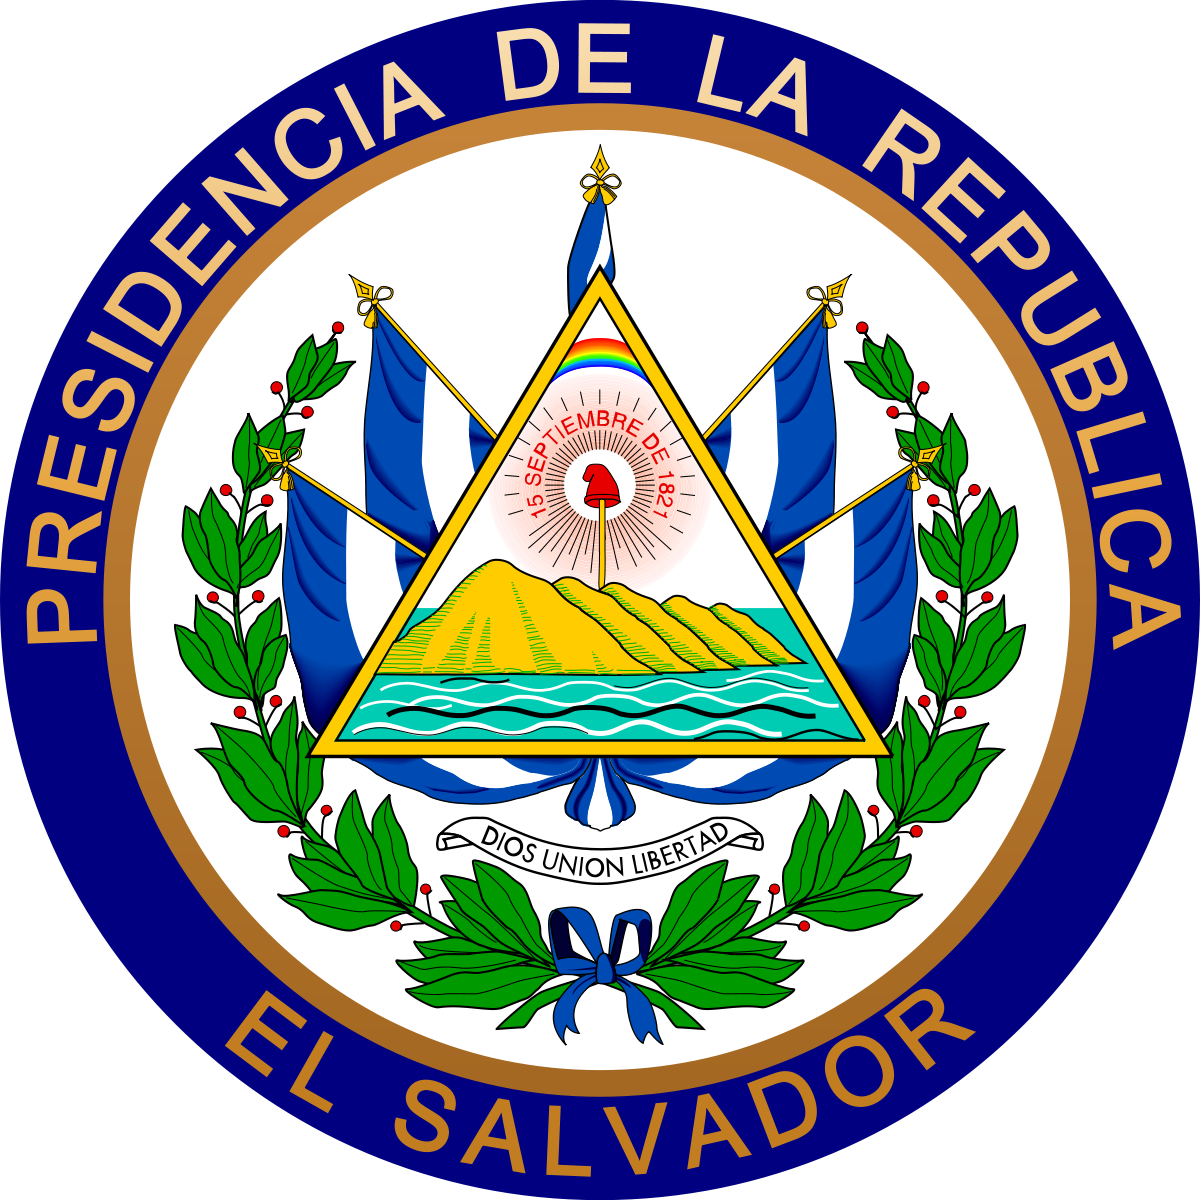 Republic Of El Salvador (1200x1200)